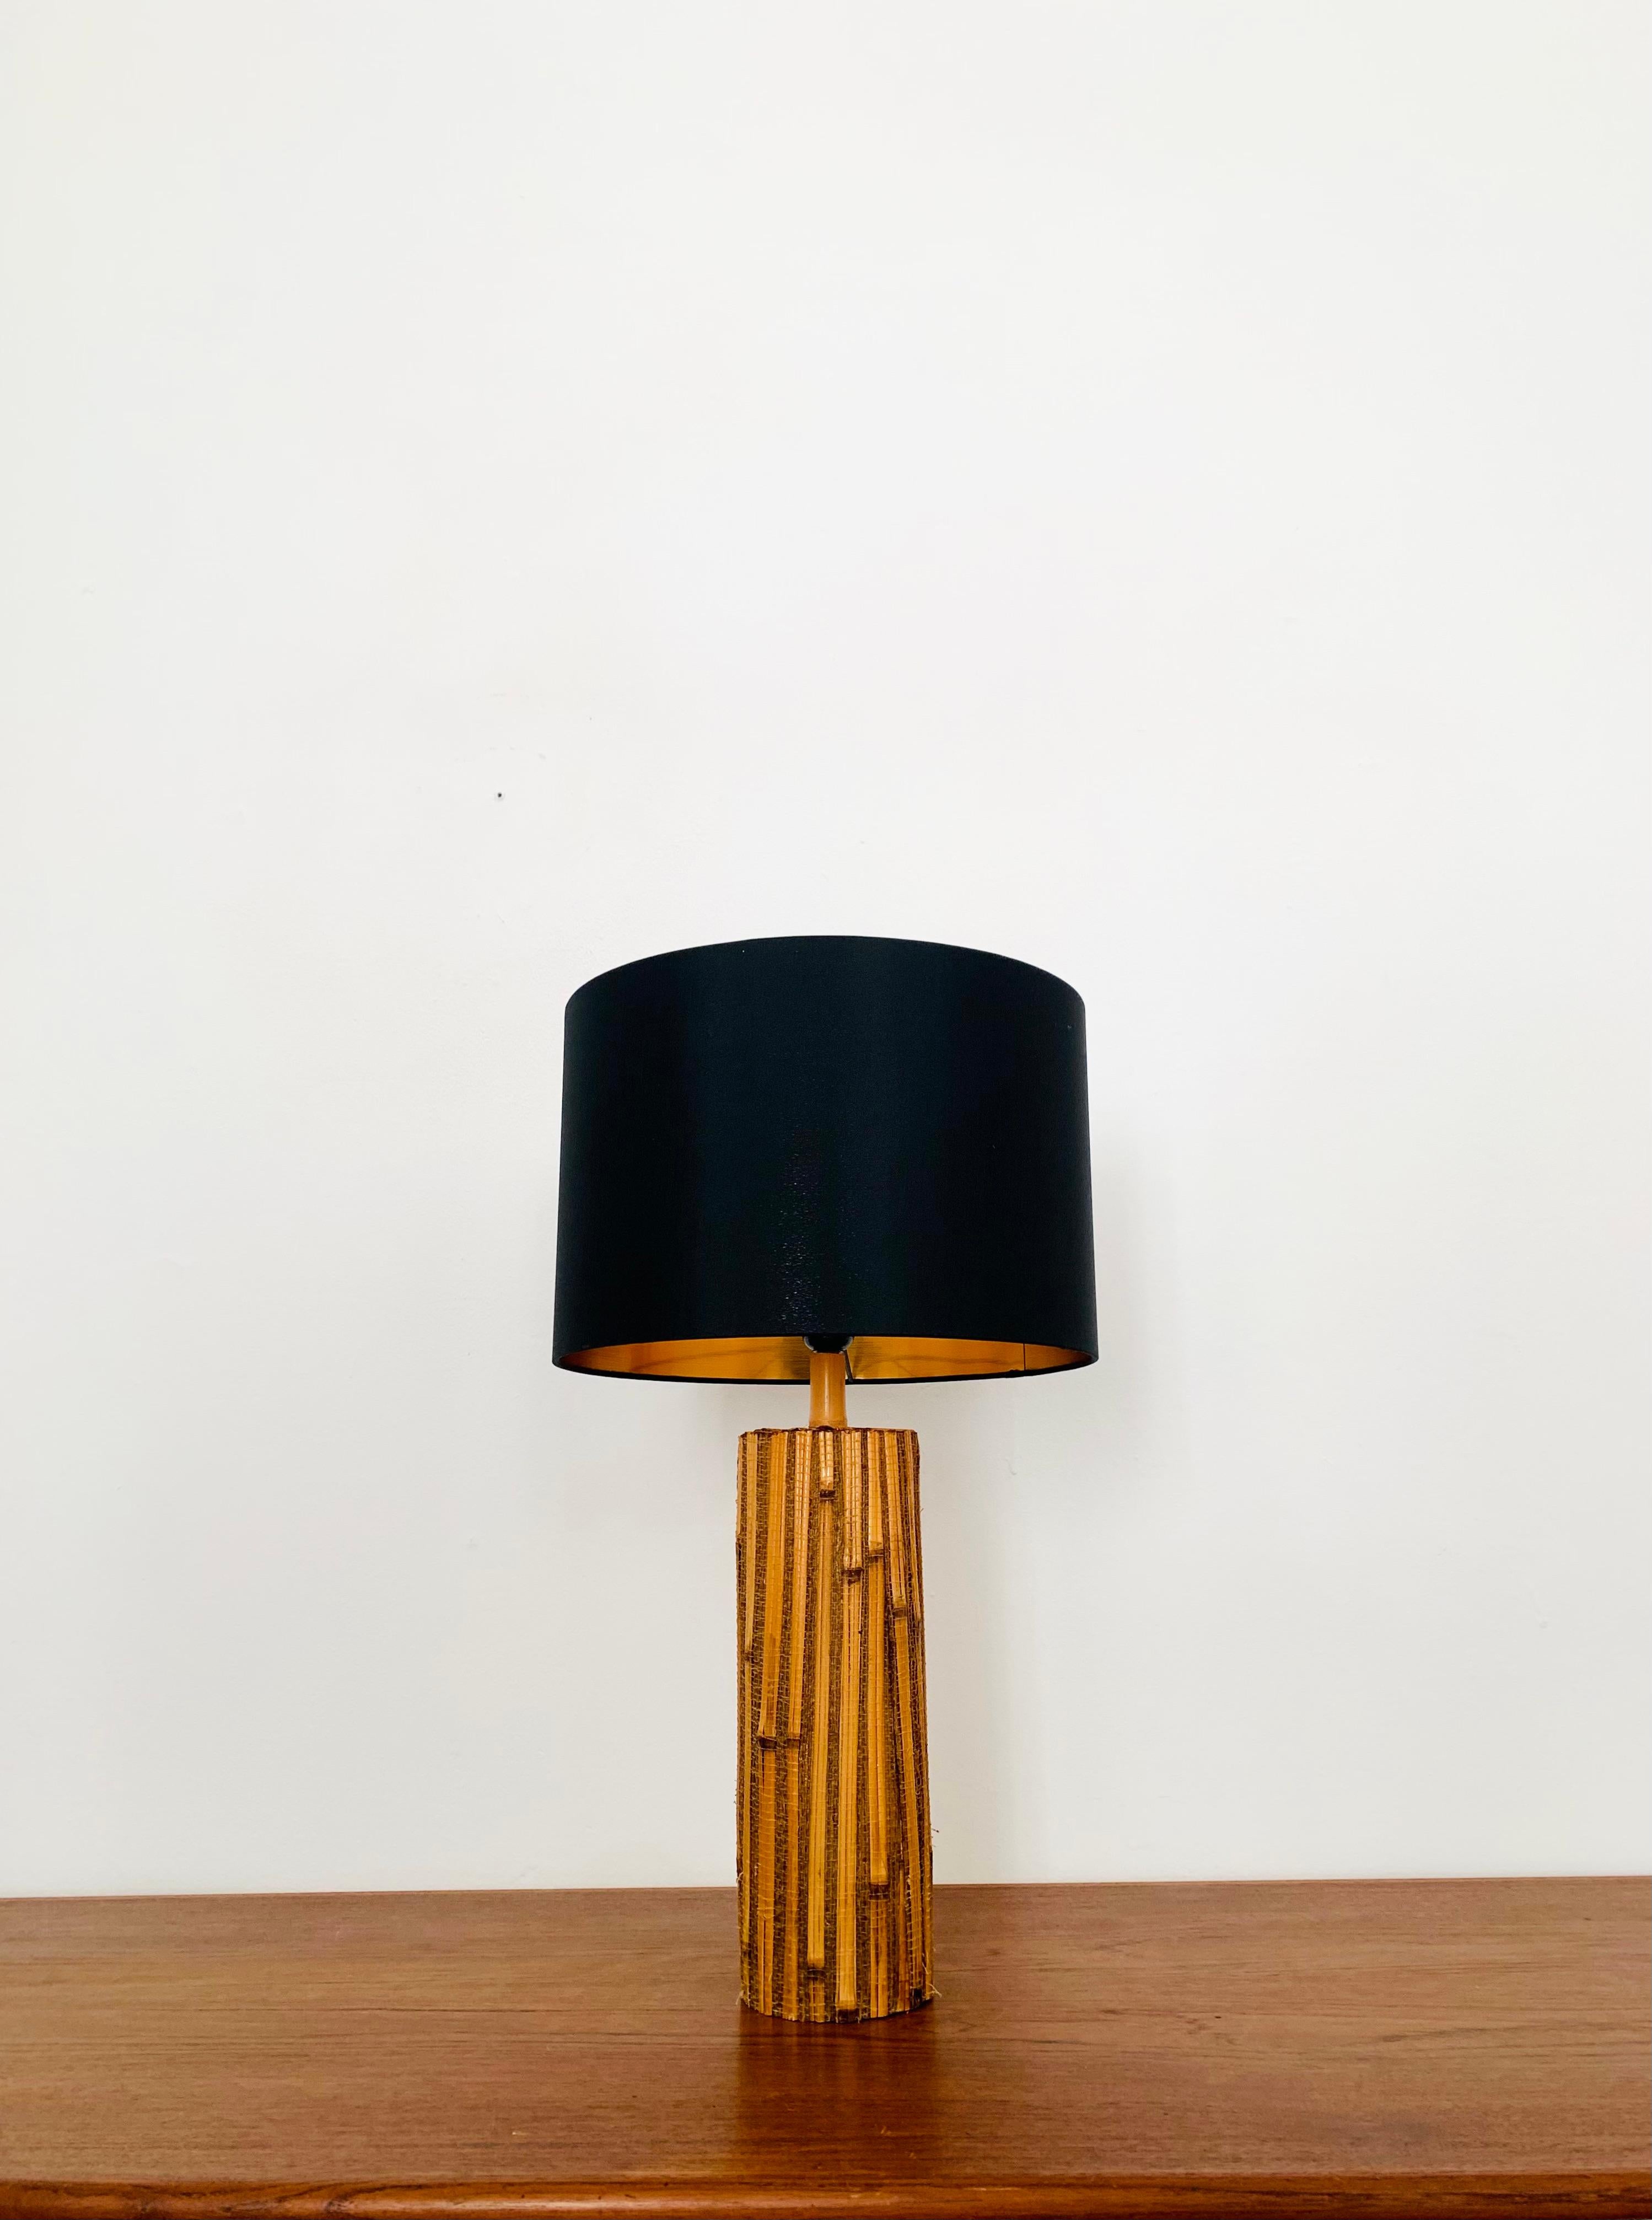 Merveilleuse lampe de table en bambou des années 1960.
Un design d'une beauté exceptionnelle et un enrichissement pour chaque foyer.
Une ambiance lumineuse chaleureuse s'installe.

Condit :

Très bon état vintage avec de légers signes